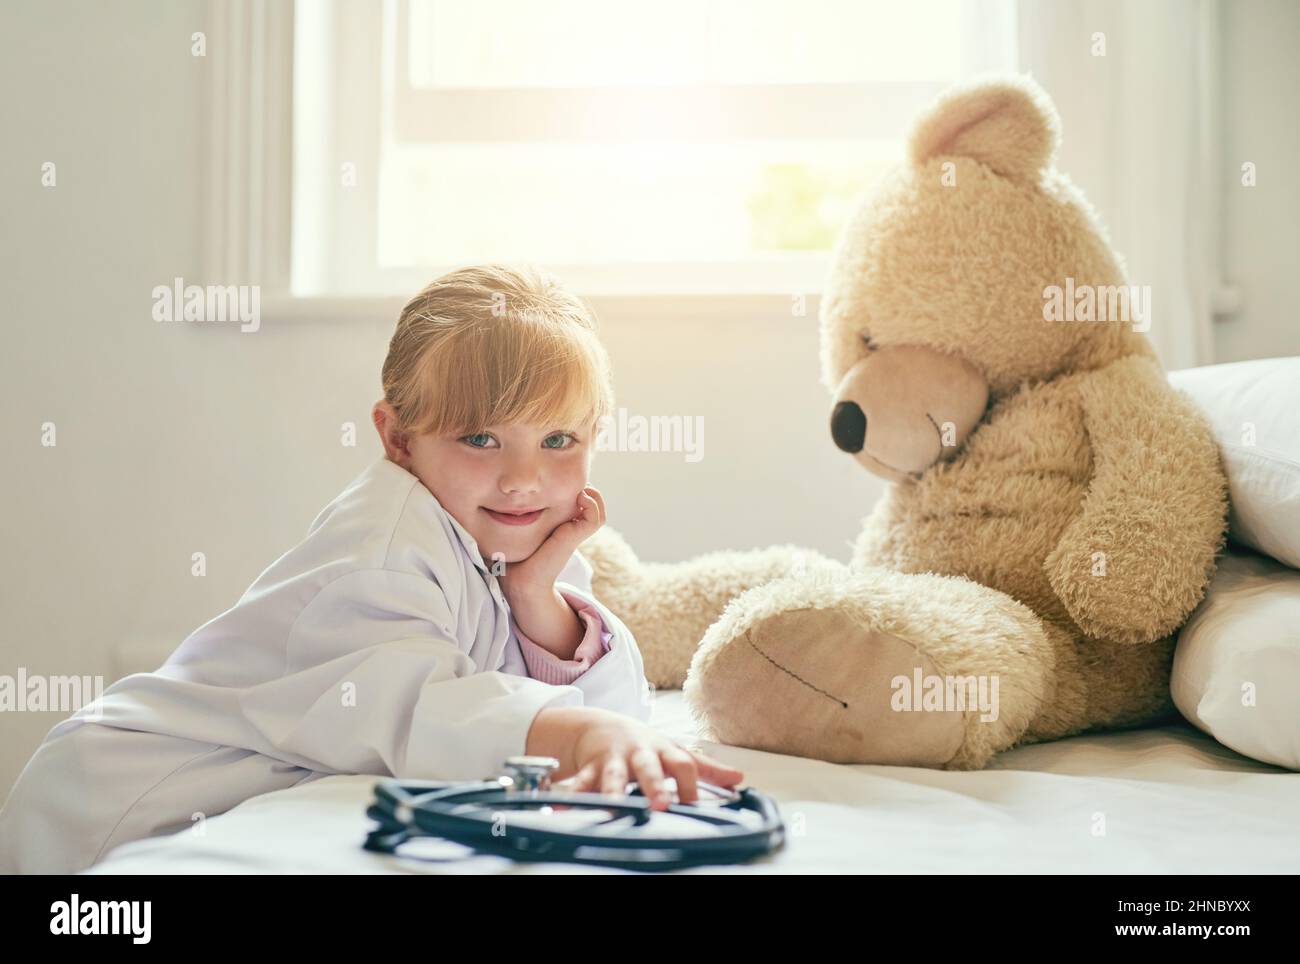 Io formico di aiutarti con la tua salute. Shot di una bambina adorabile vestita come medico e trattando il suo orsacchiotto come paziente. Foto Stock